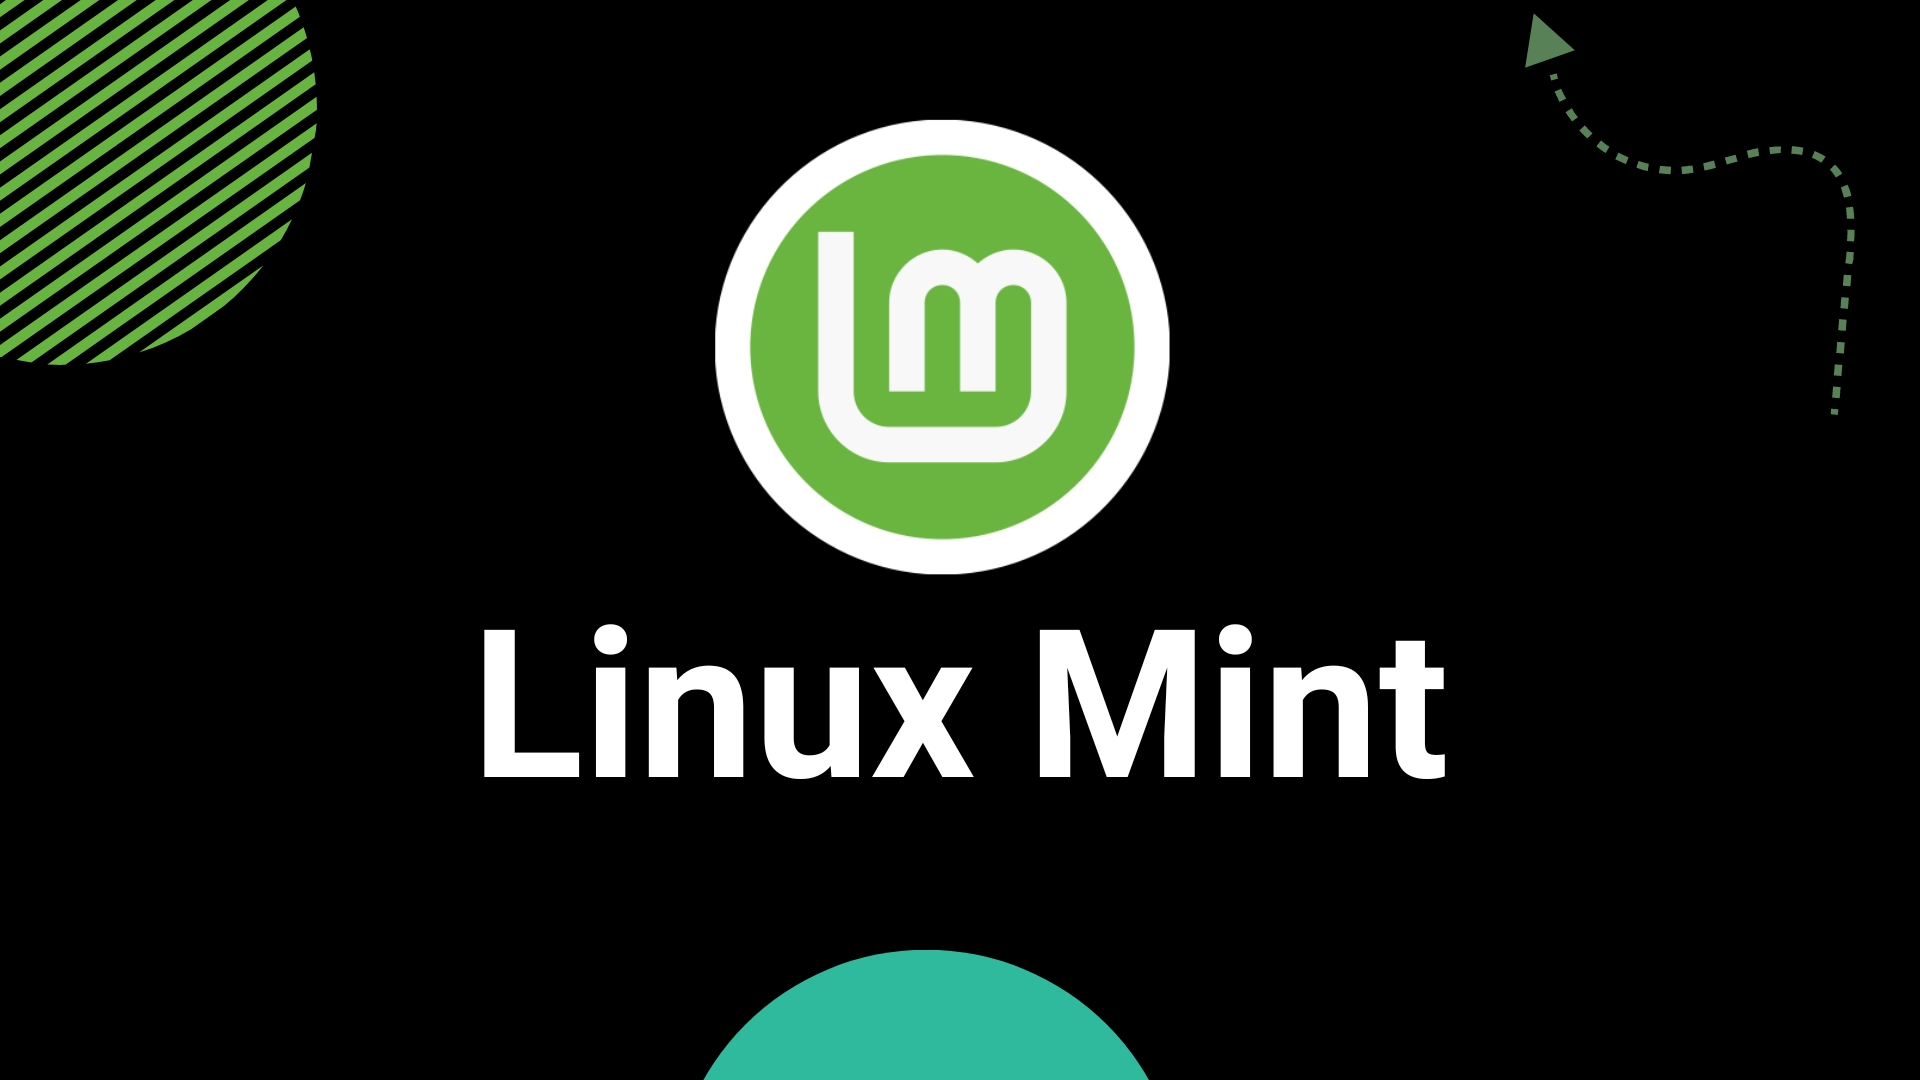 Das Linux Mint Projekt sucht Beta-Tester für schnellere Spiegelserver